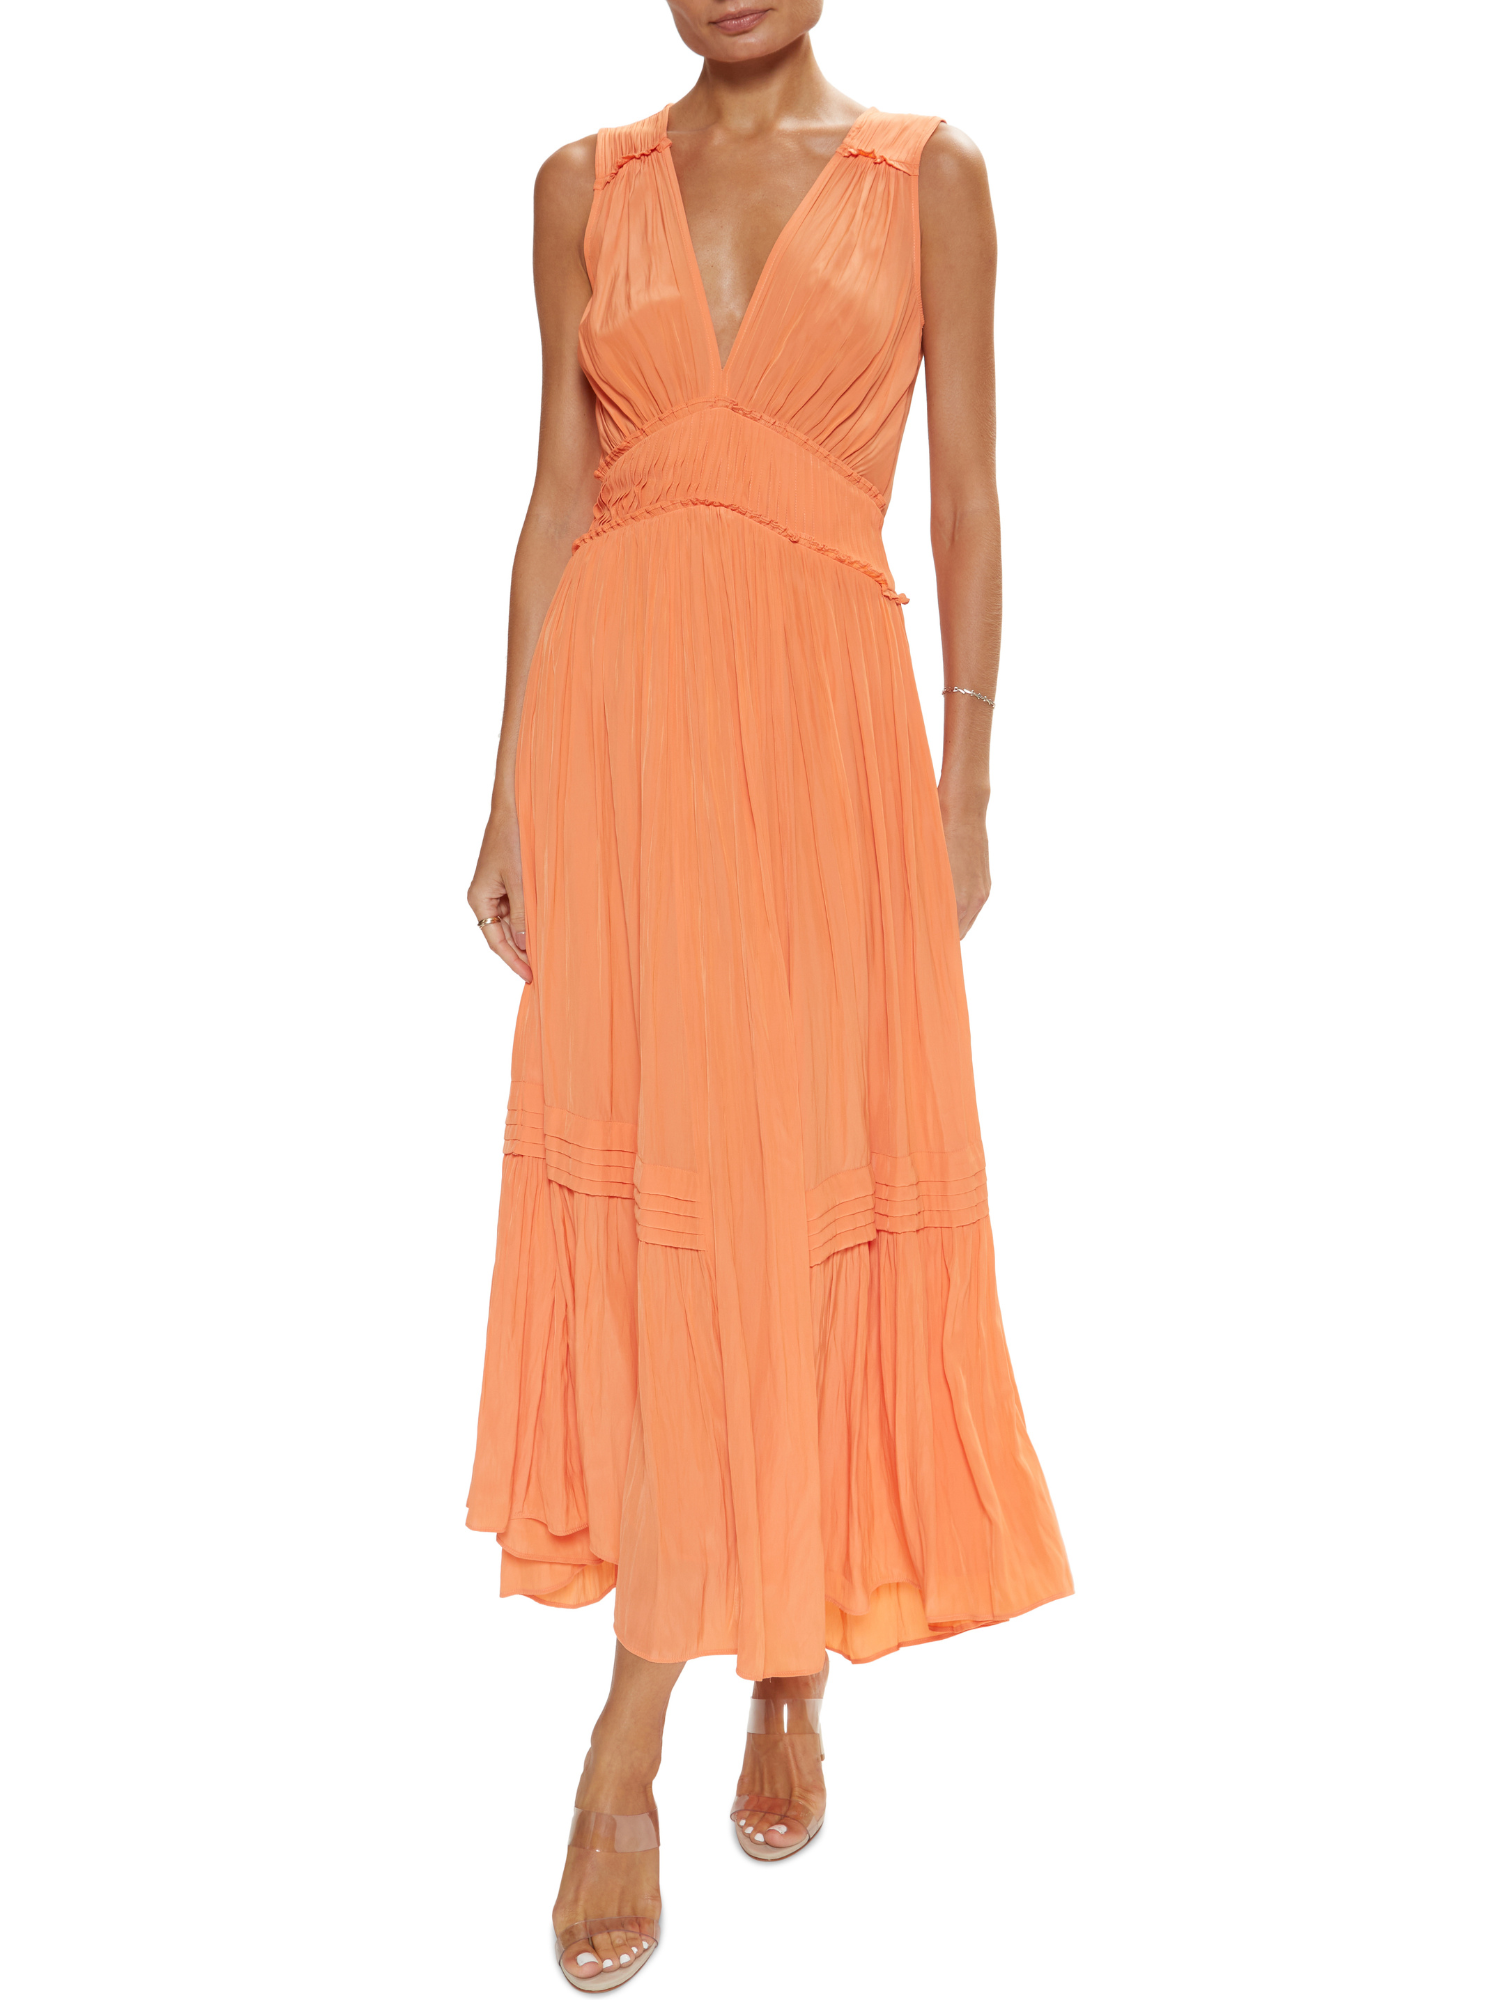 Ramy Brook Dierdre Dress in Tropic Orange